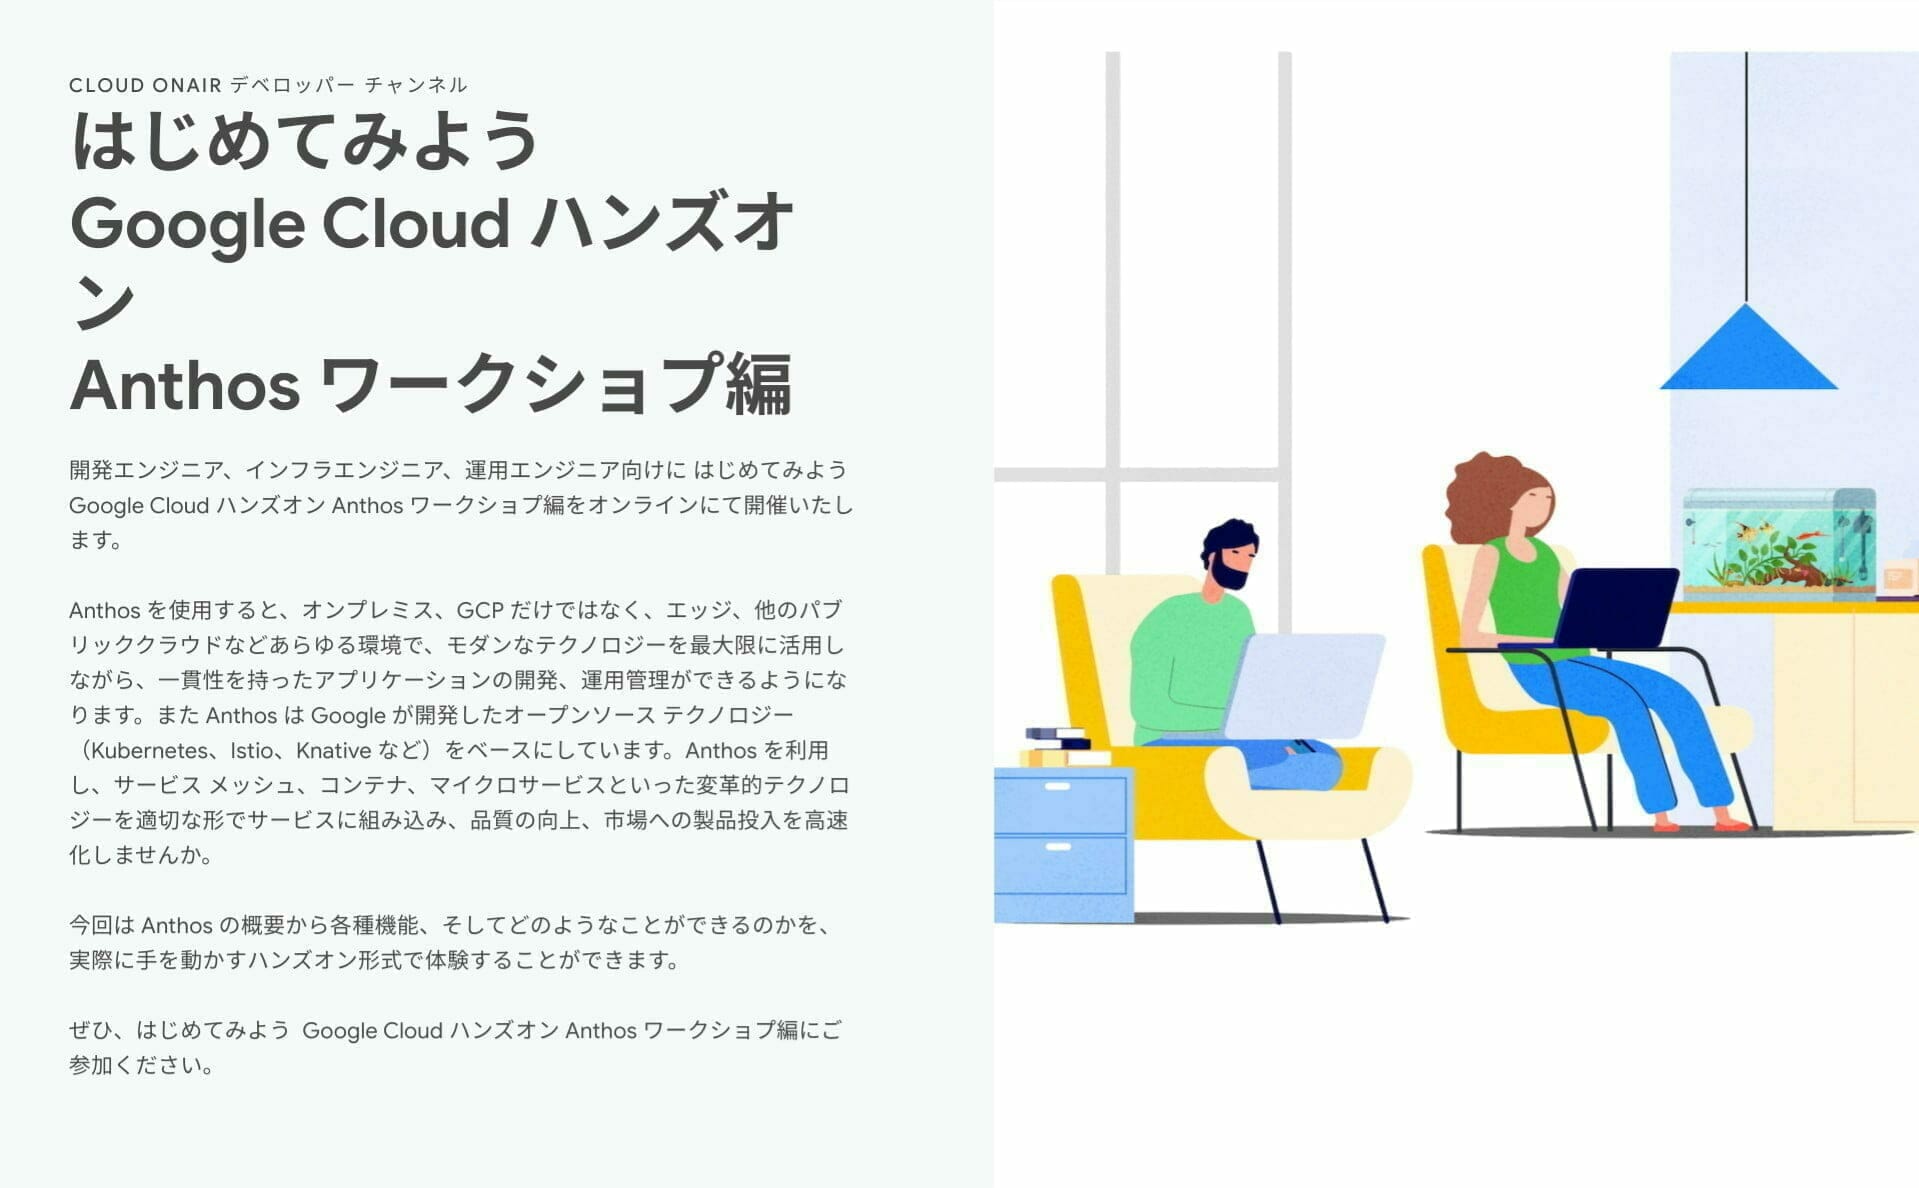 [GCP] はじめてみよう Google Cloud ハンズオン Anthos ワークショプ編